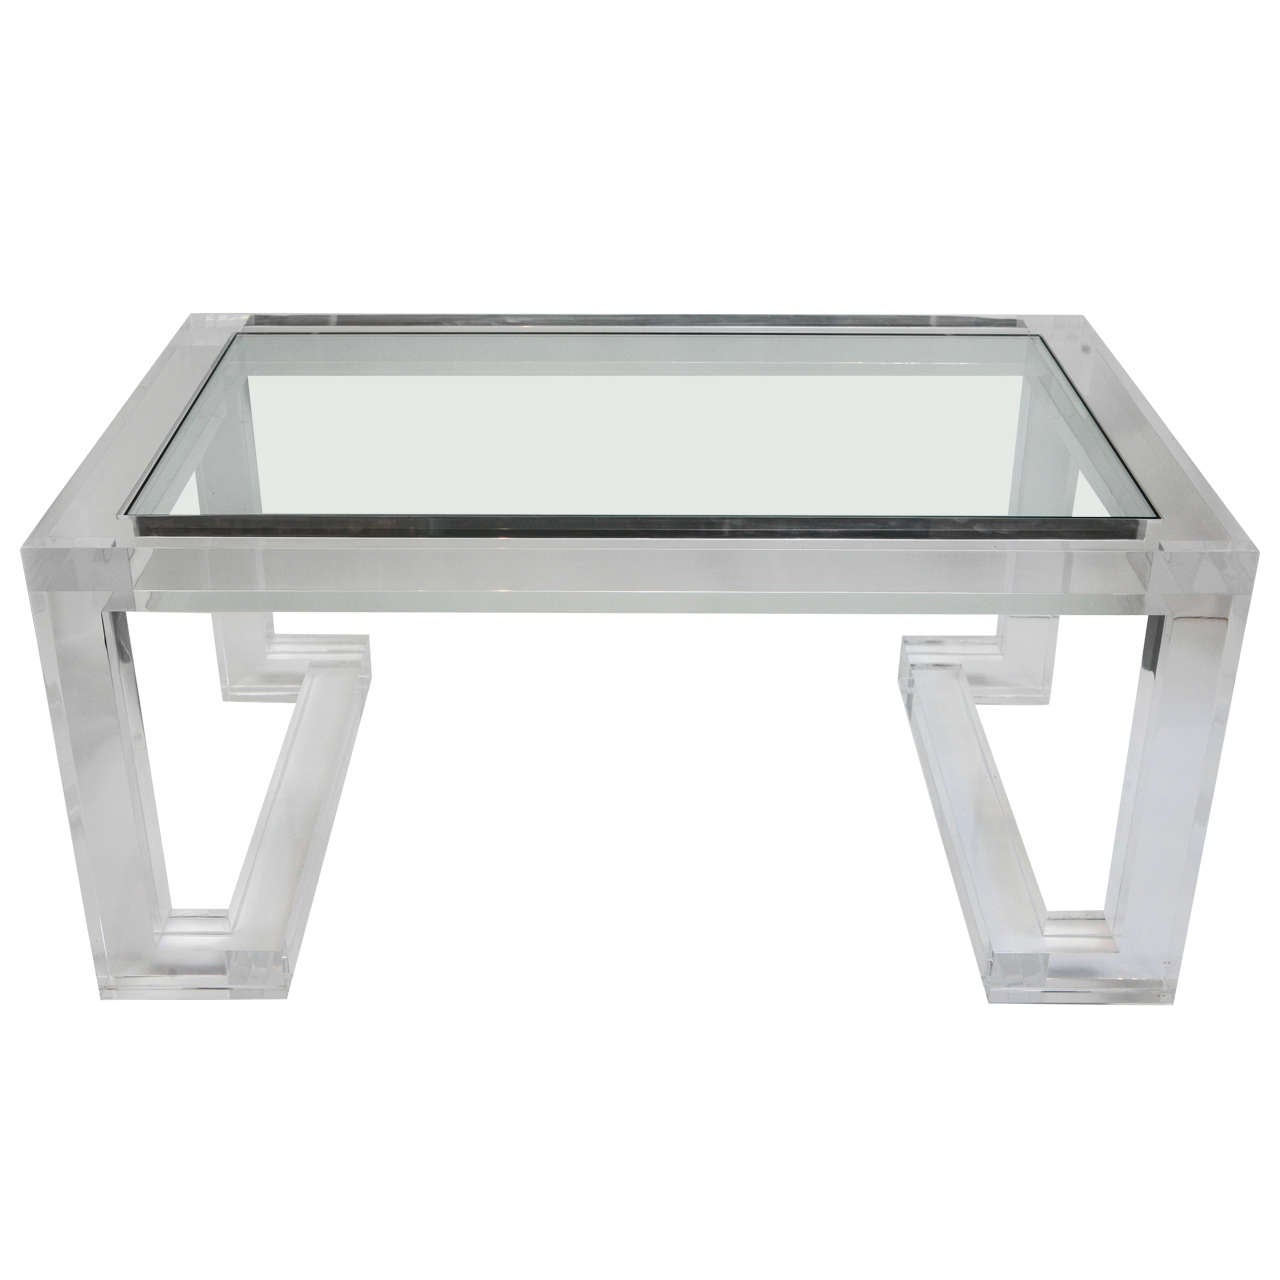 Table basse en acrylique et verre